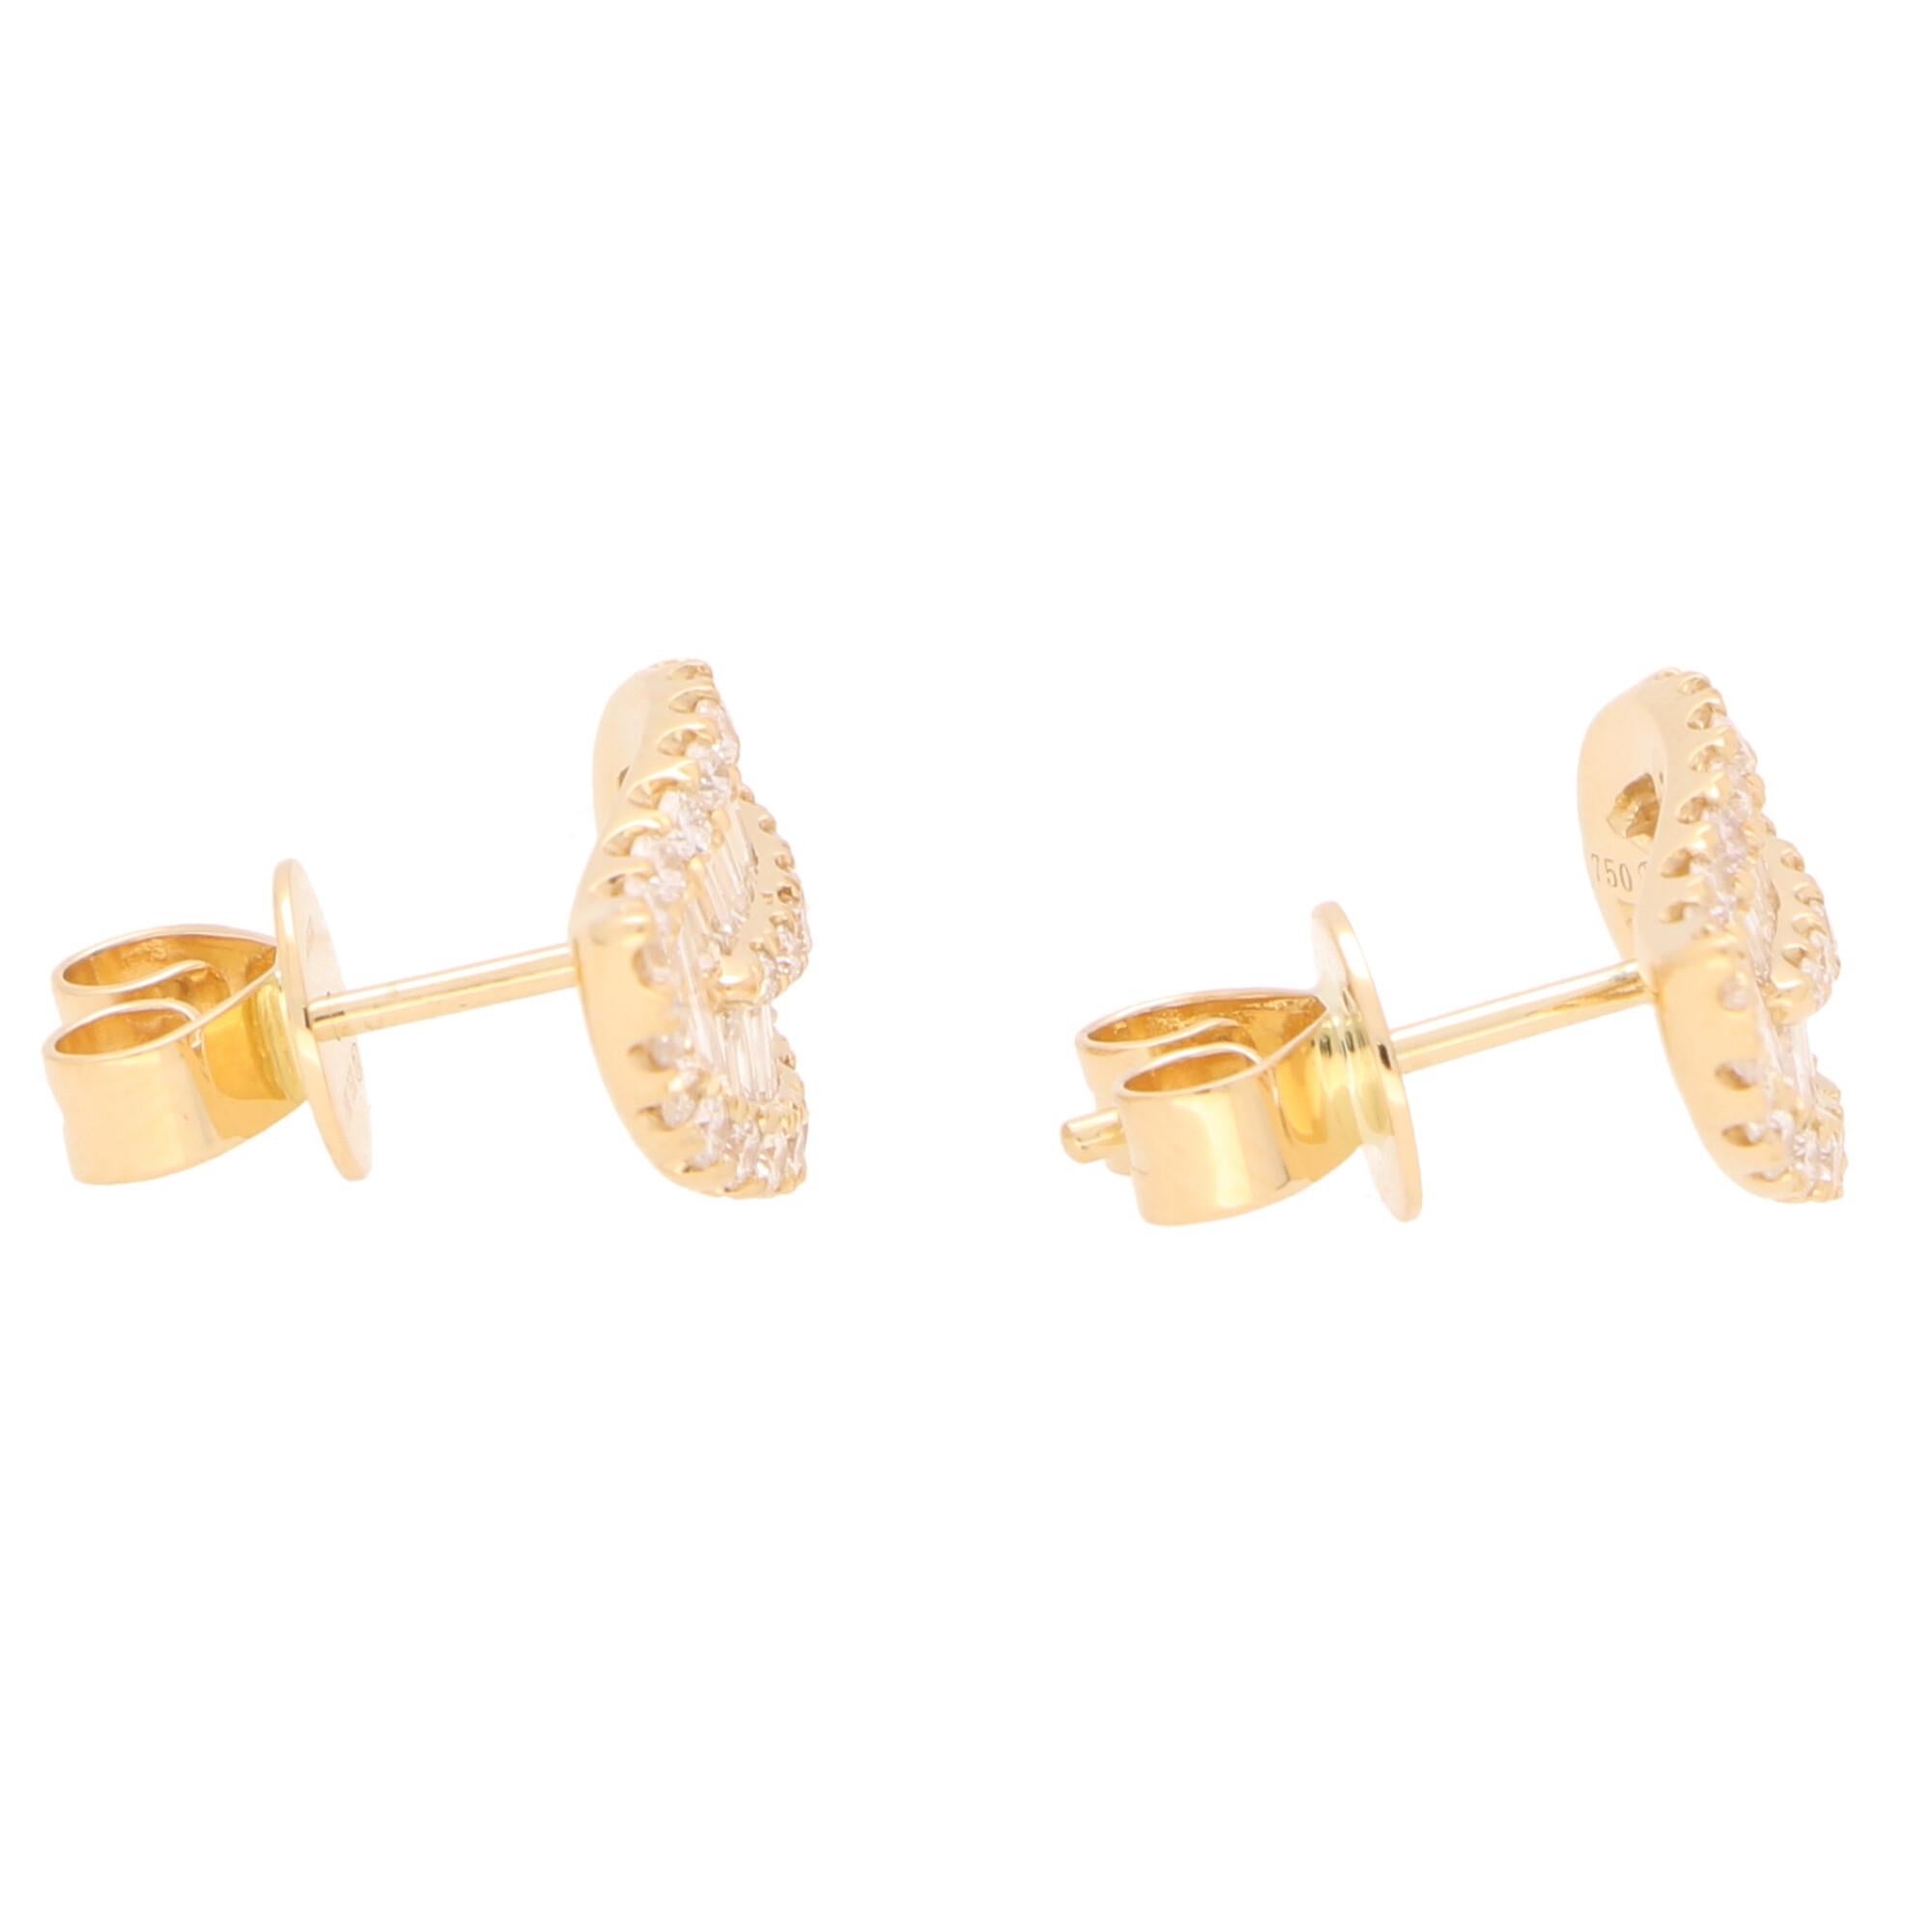 Ein wunderschönes Paar diamantener Blattohrringe aus 18 Karat Gelbgold. 

Jeder Ohrring zeigt ein einfaches Blattmuster und ist mit einer Mischung aus runden Diamanten im Brillant- und Baguetteschliff besetzt. Der Kontrast zwischen den beiden